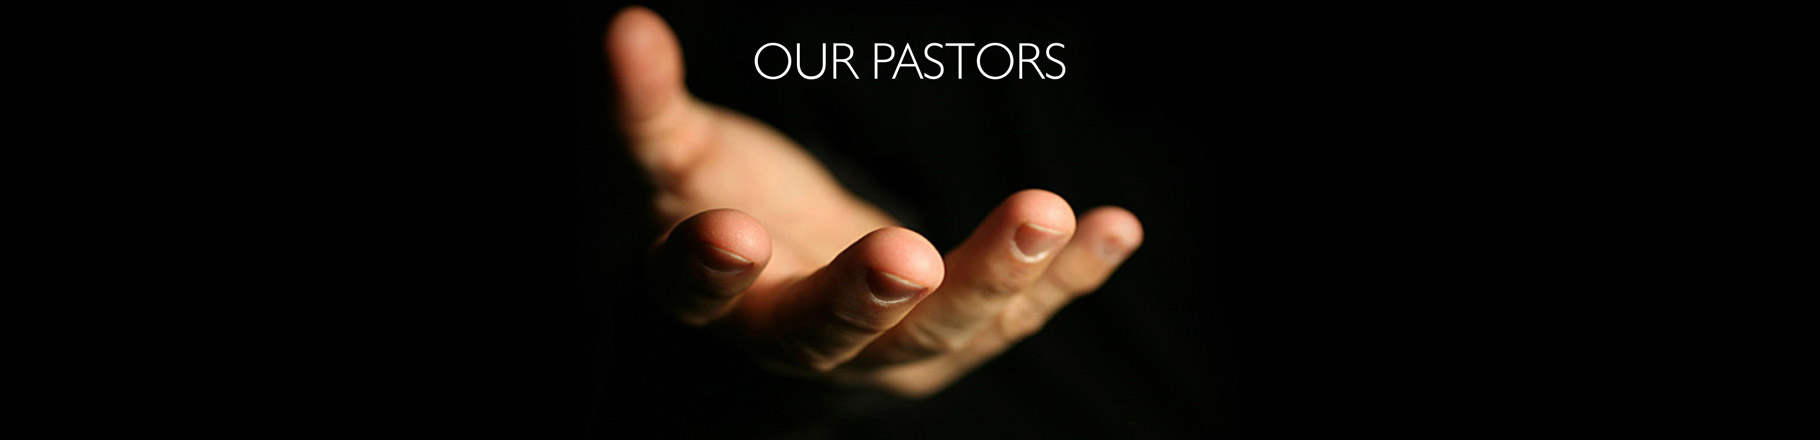 Our Pastors